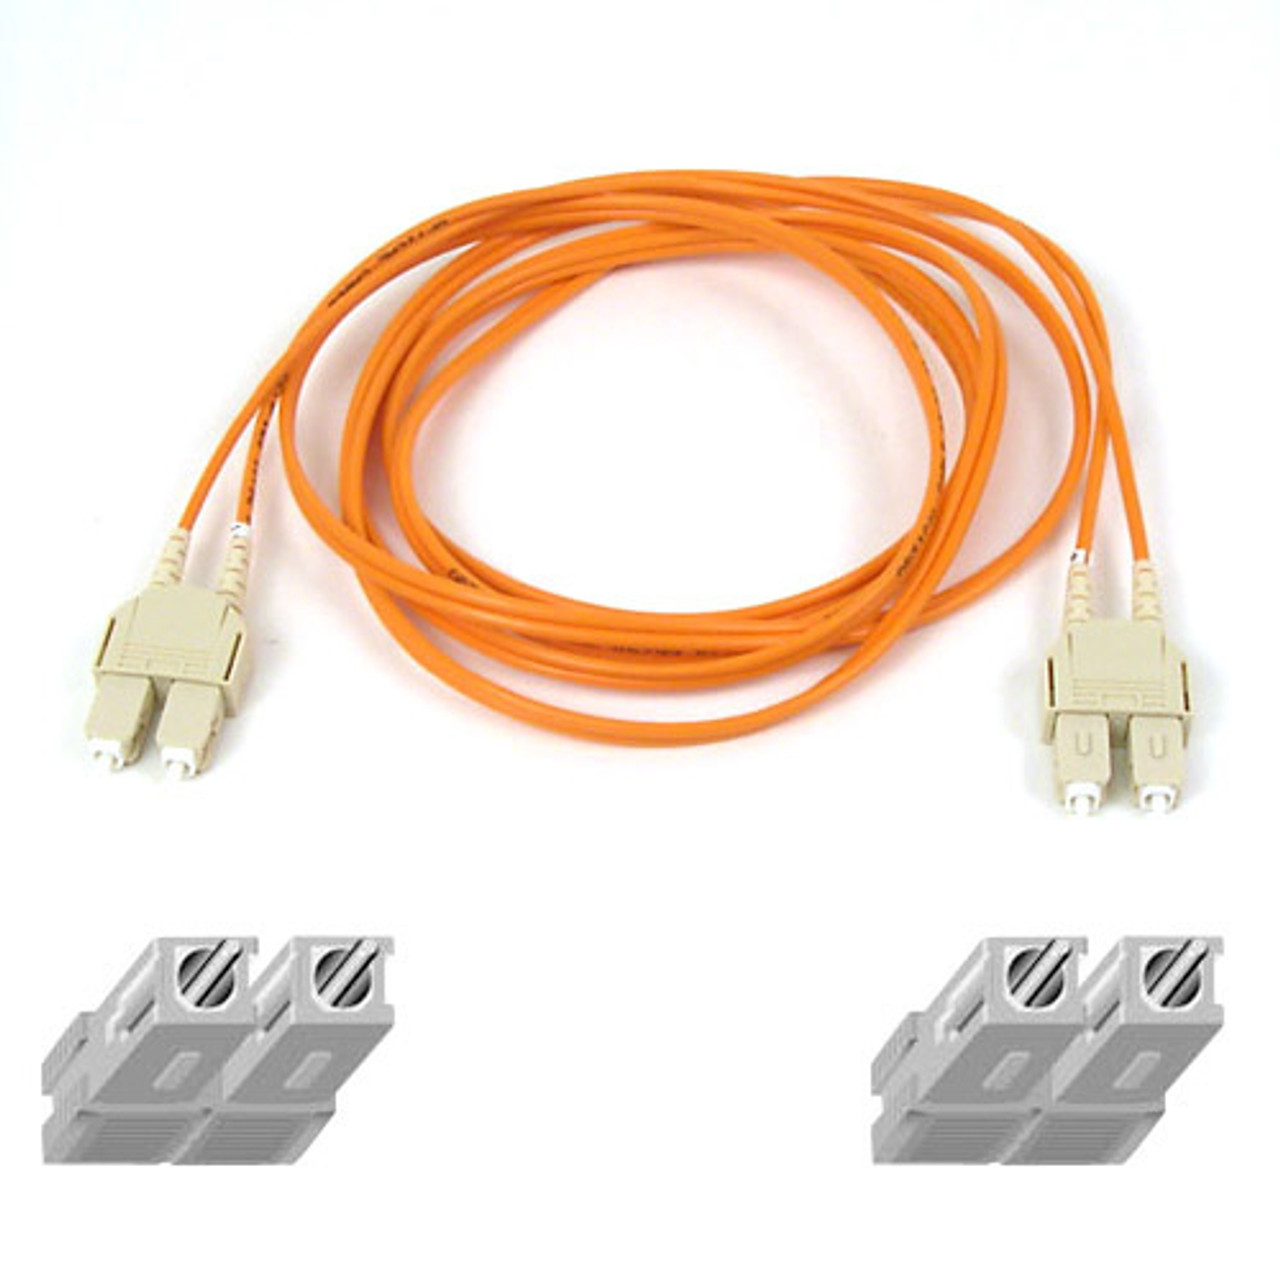 A2F20277-01M | Belkin | Multimode SC/SC Duplex Fiber Patch Cable 1m SCSI cable Orange 39.4" (1 m)